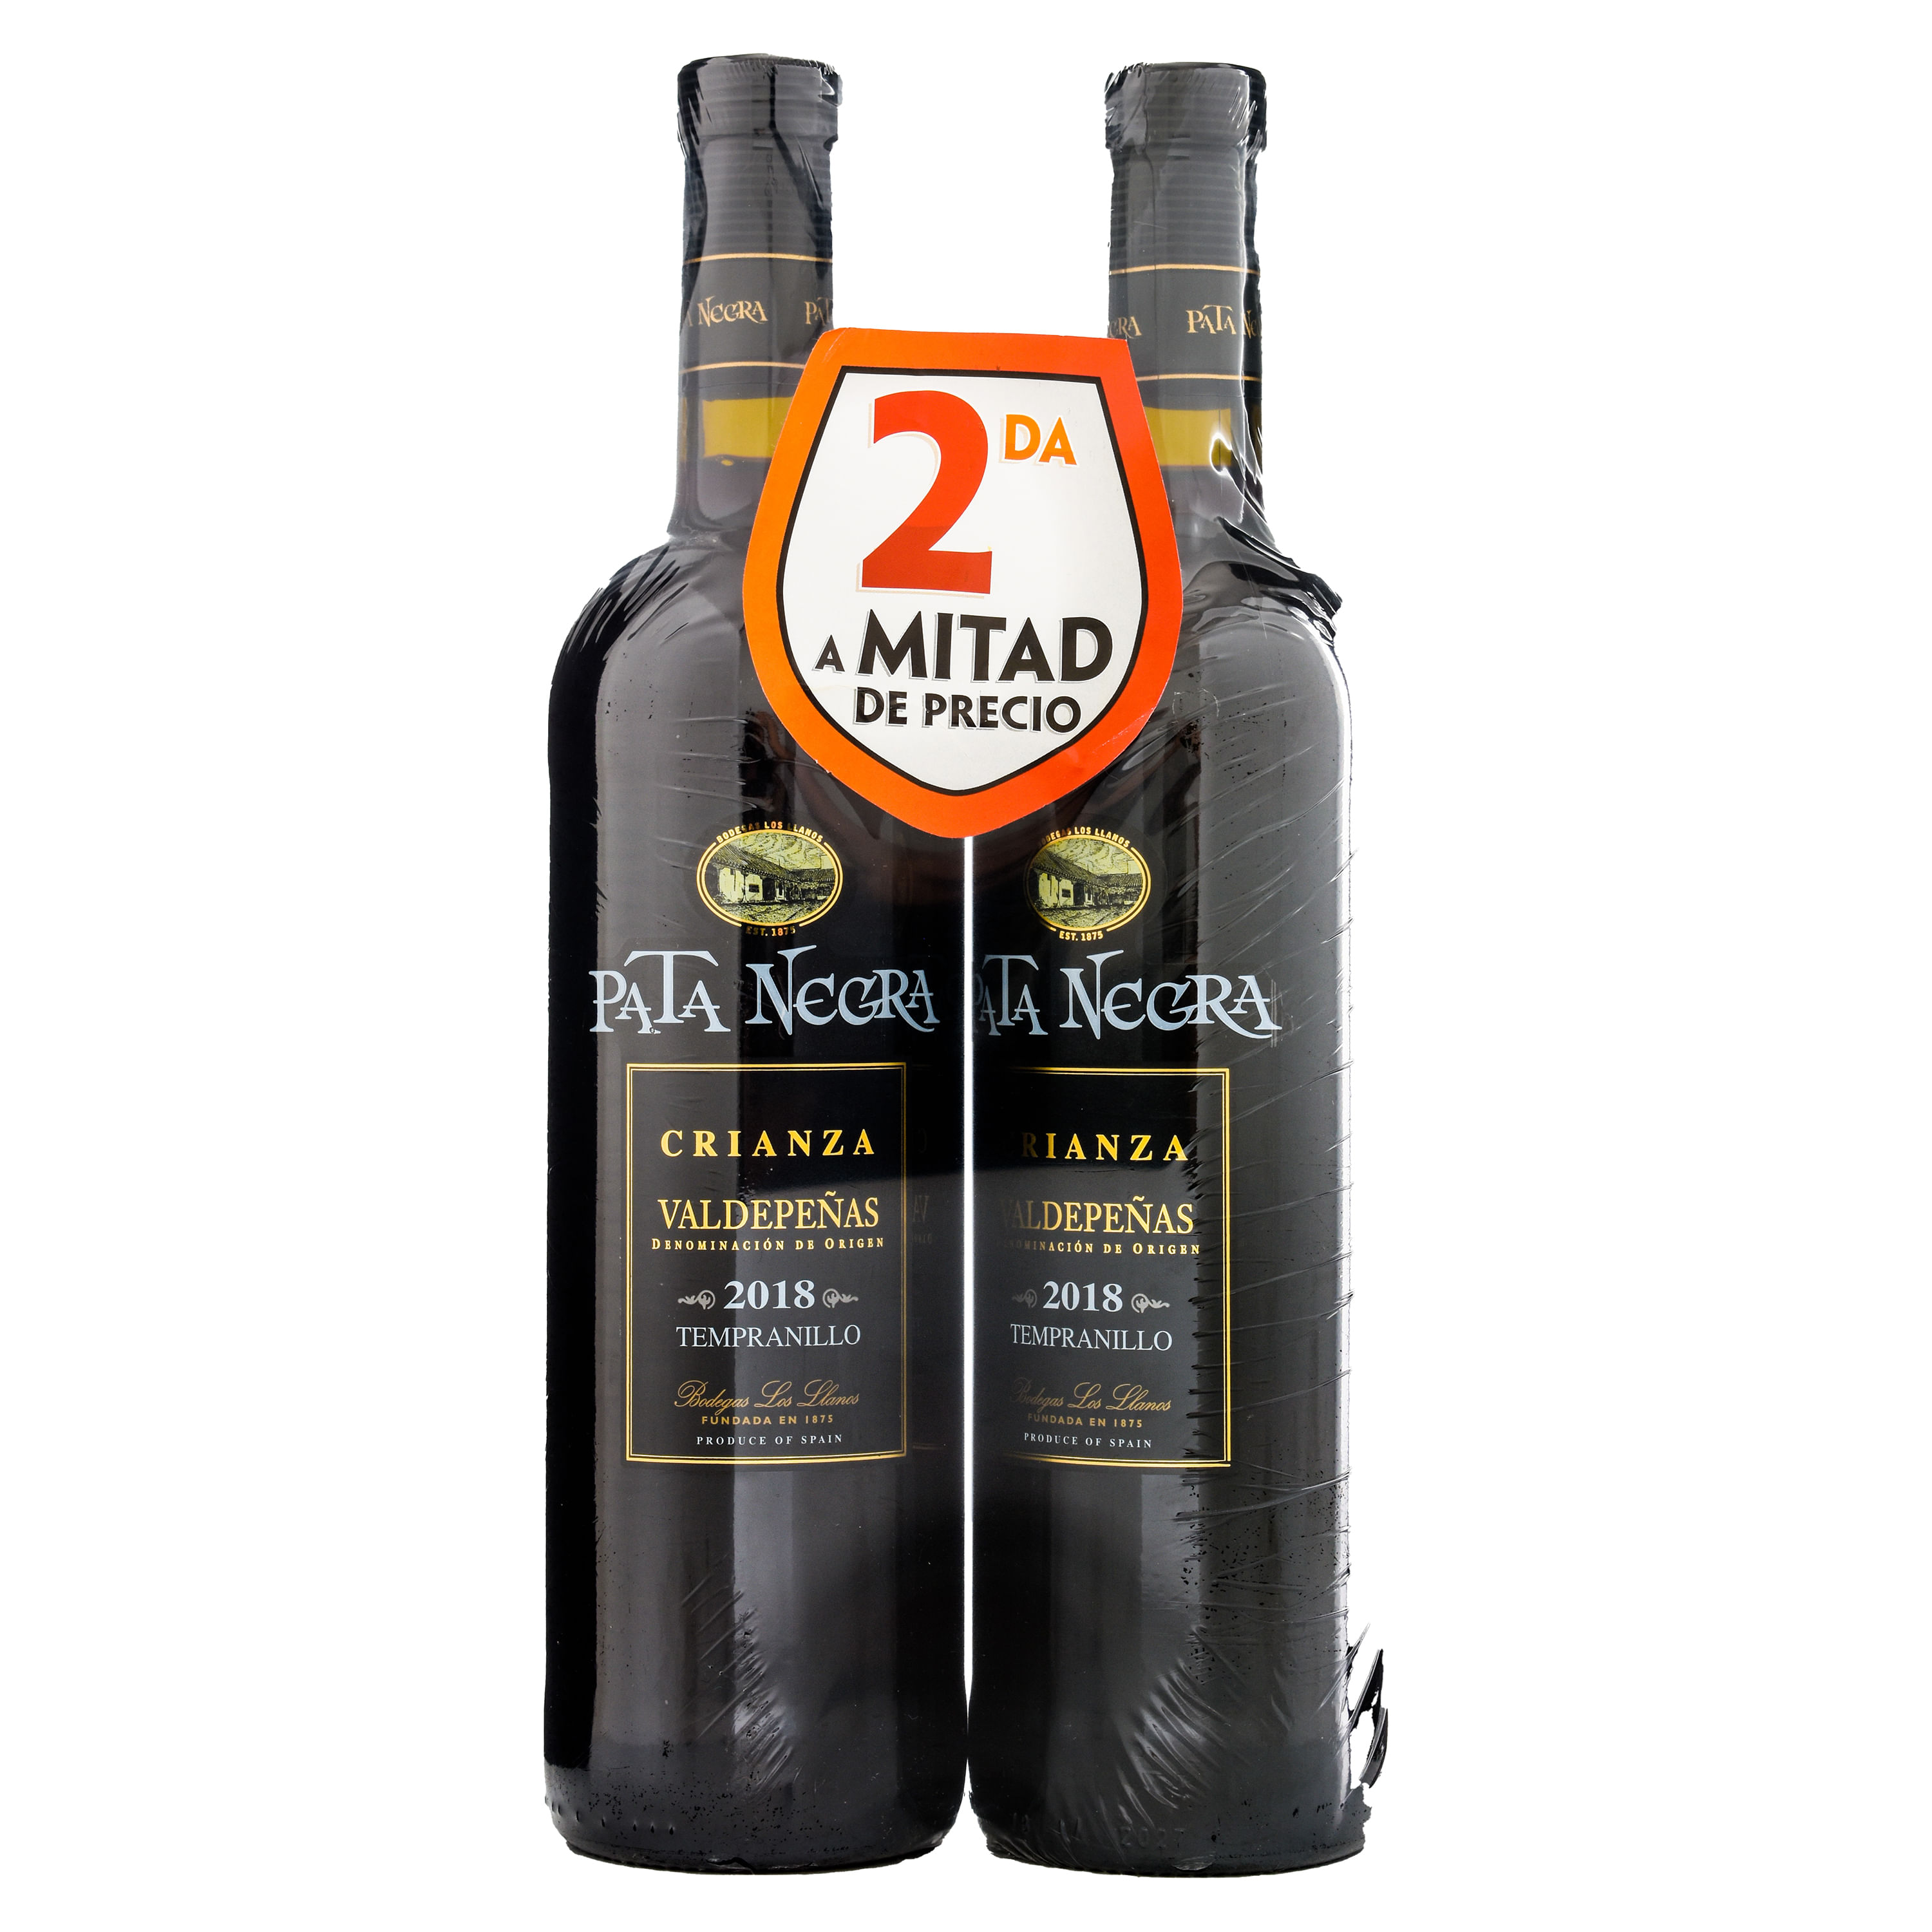 Comprar Vino Pata Negra Cava Brut Espuman - 750ml